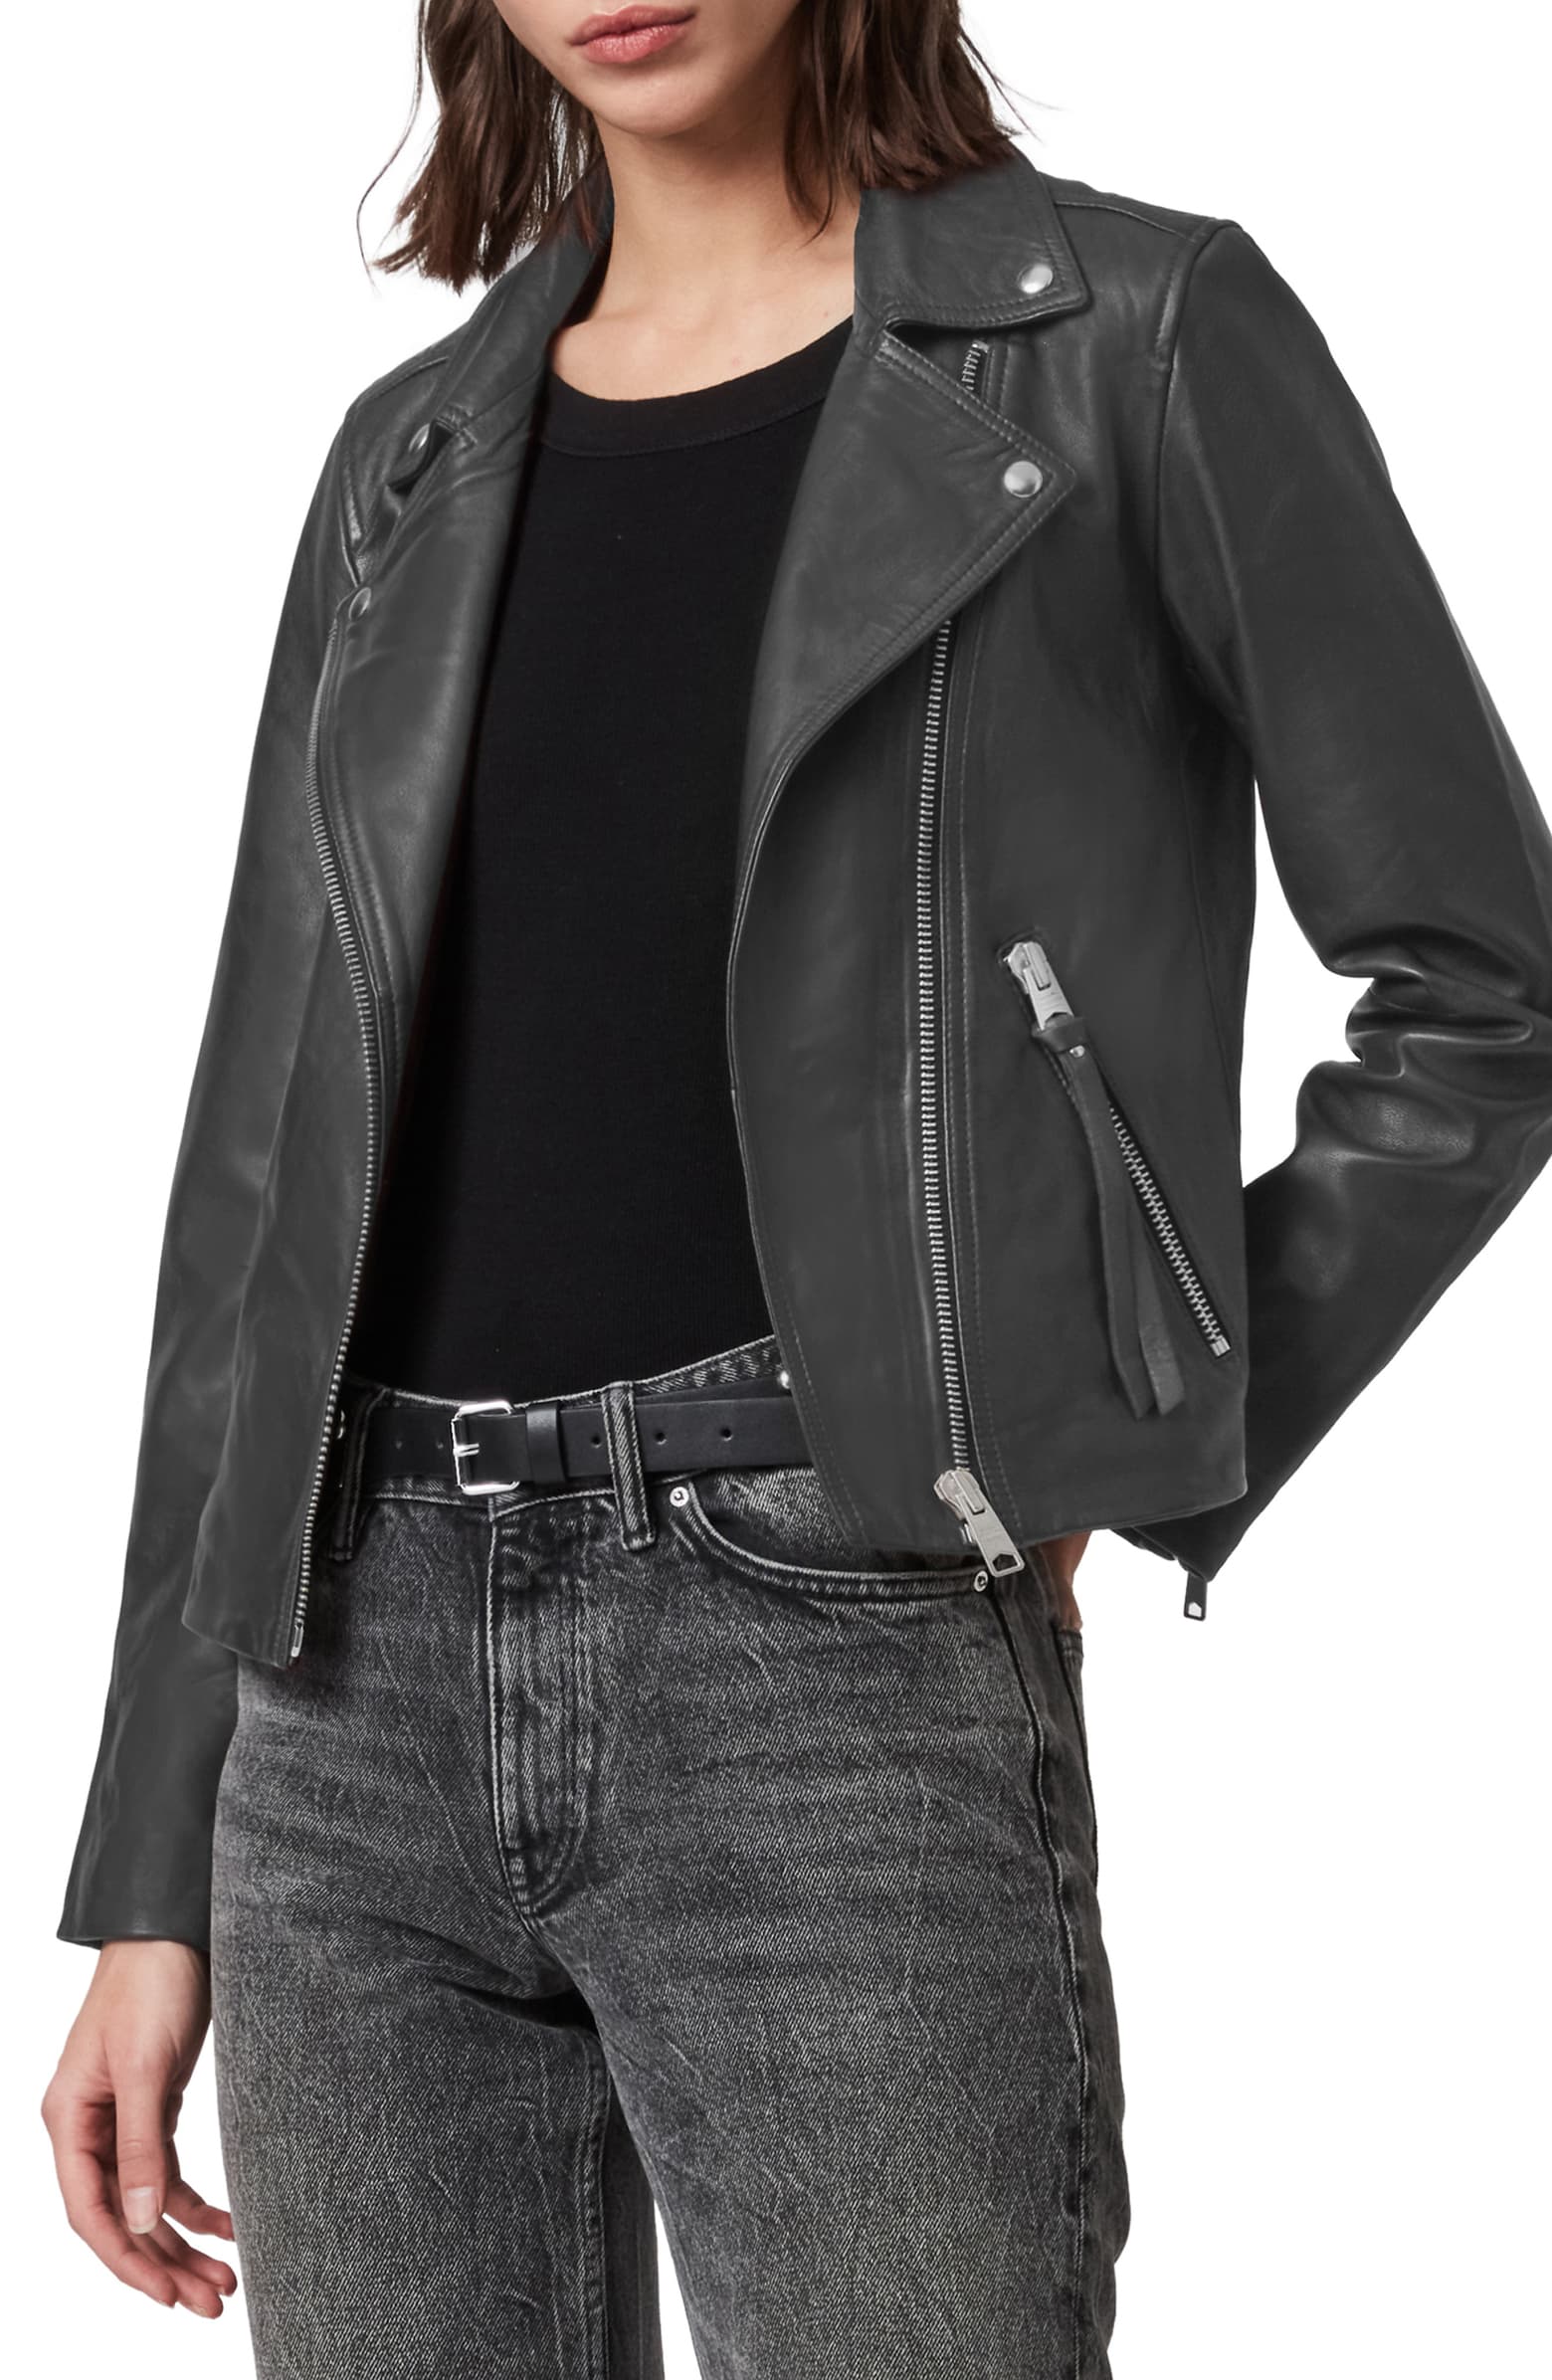 Nordstrom Sale Favorites Including The Allsaints Leather Biker Jacket In Dark Gray